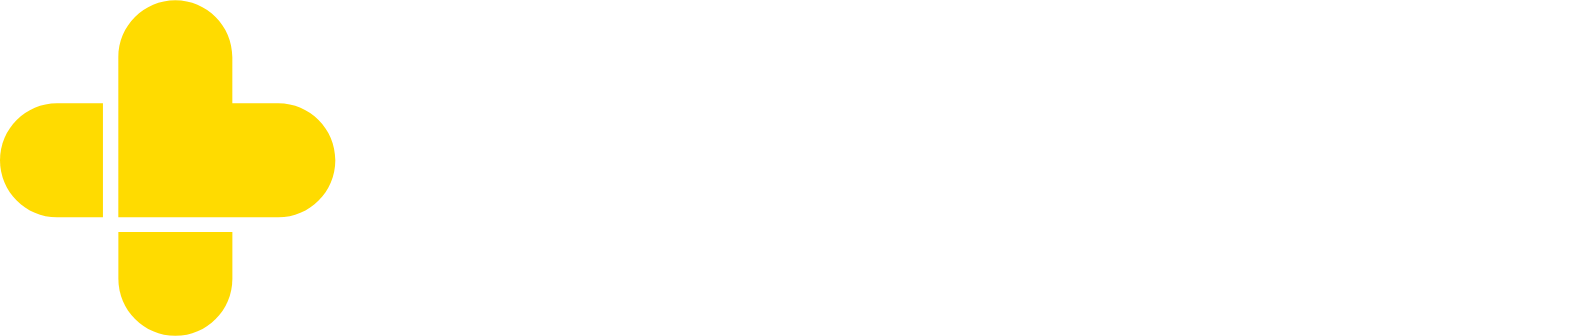 GoodRx logo large for dark backgrounds (transparent PNG)